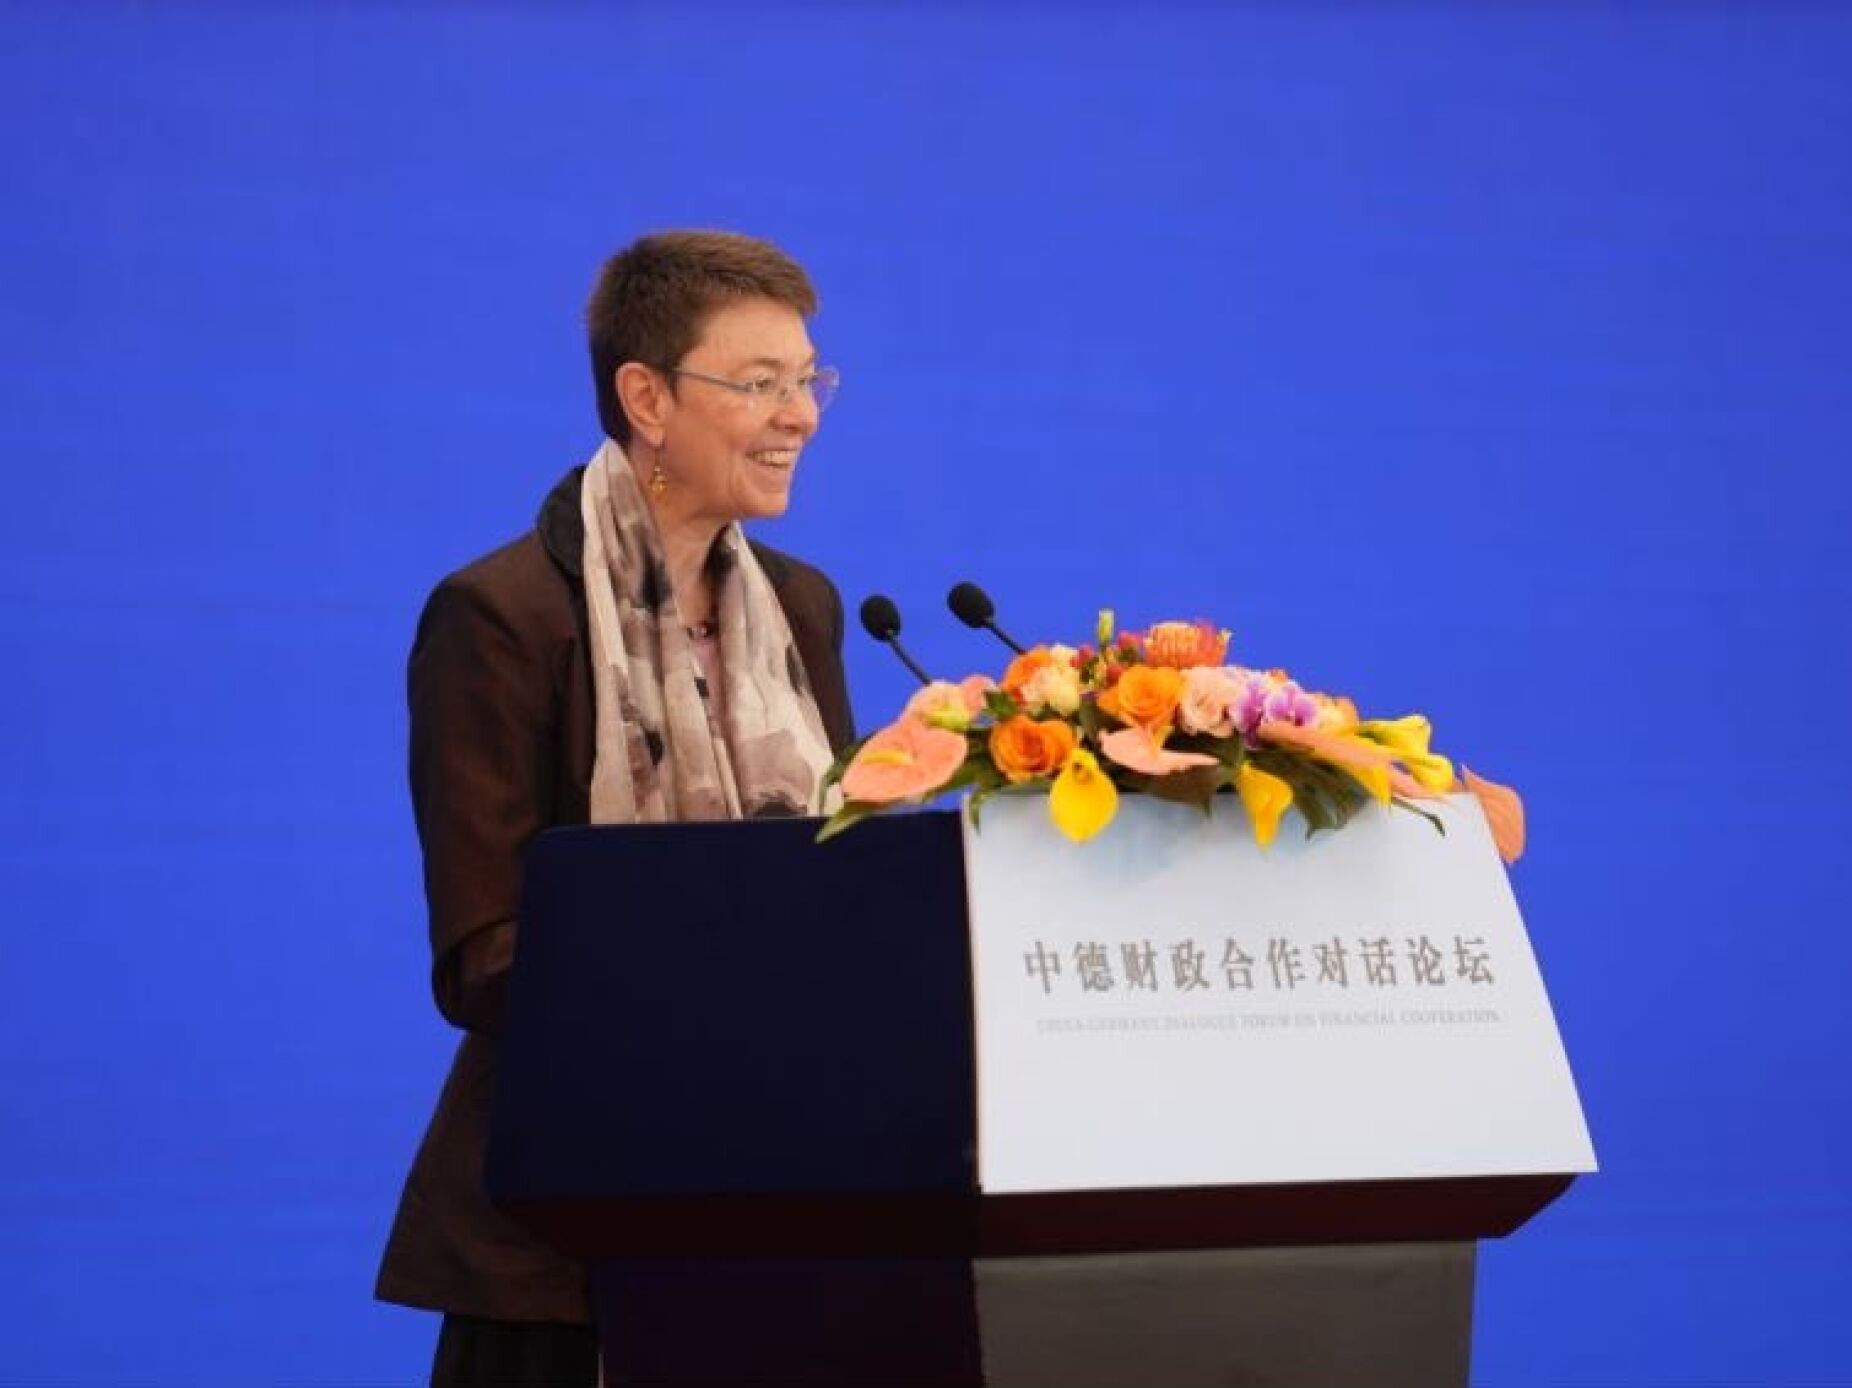 Embaixadora alemã na China convocada após detenção de alemães suspeitos de espionagem